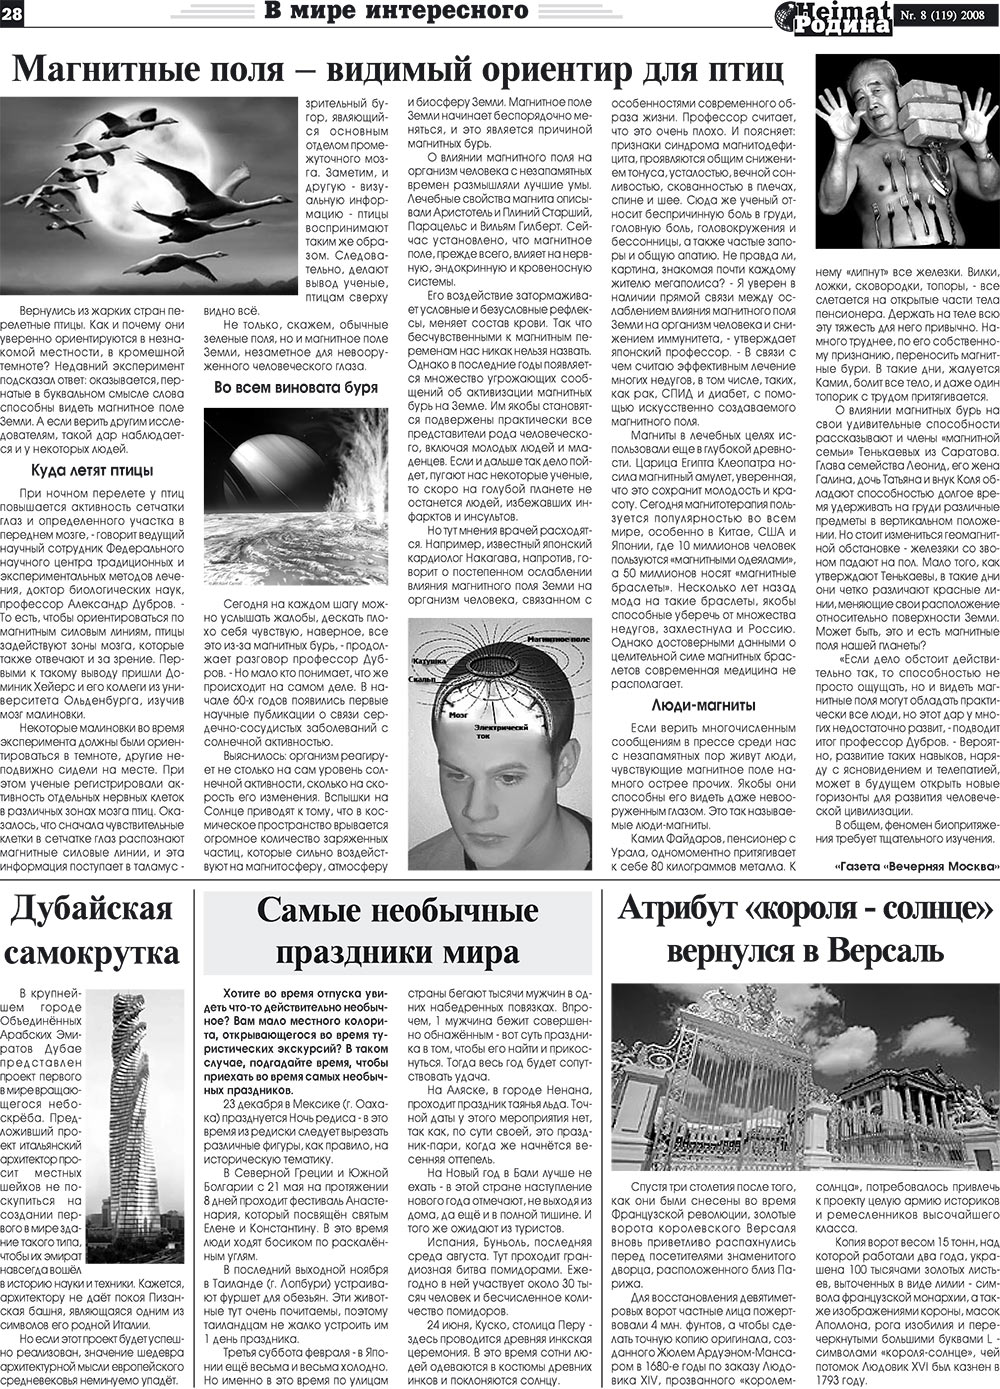 Heimat-Родина (газета). 2008 год, номер 8, стр. 28